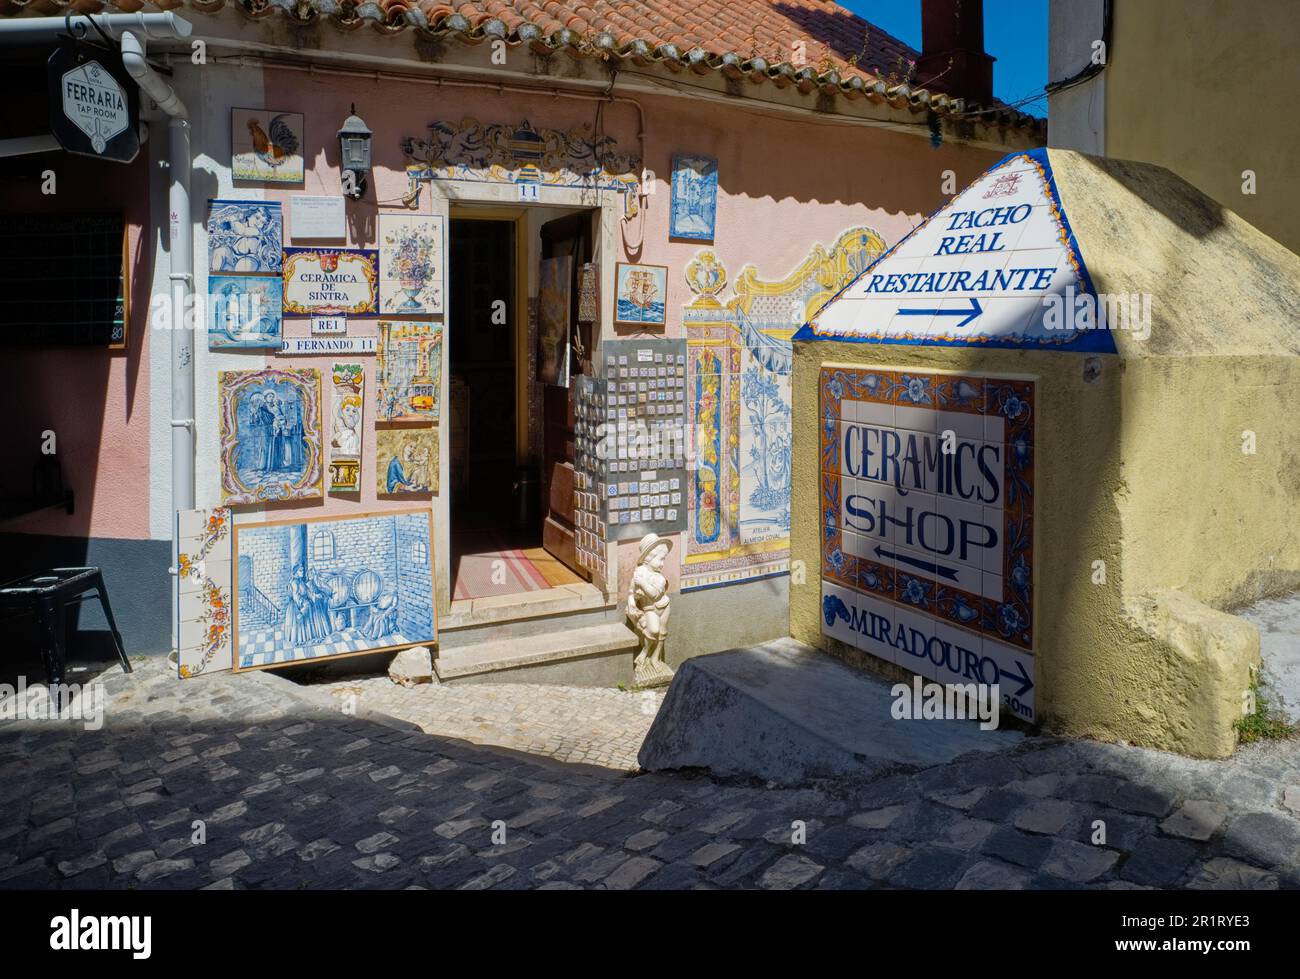 Nelle strette viuzze di Sintra un negozio di ceramica vende piastrelle decorative Foto Stock